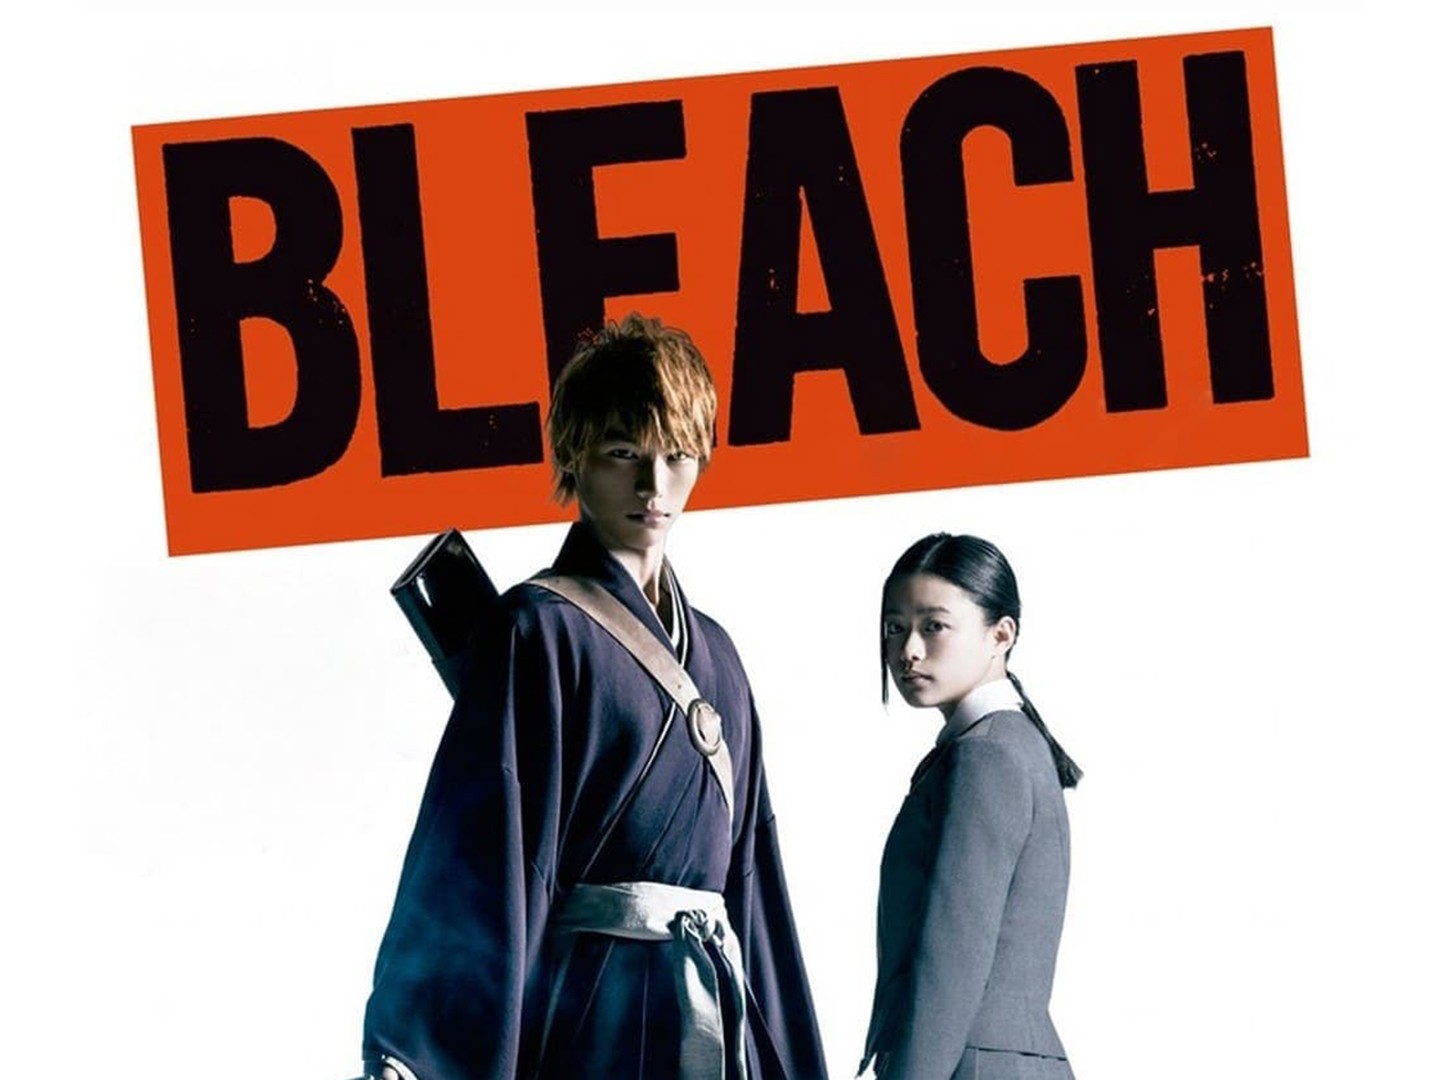 Netflix streaming Bleach in which countries? : r/bleach